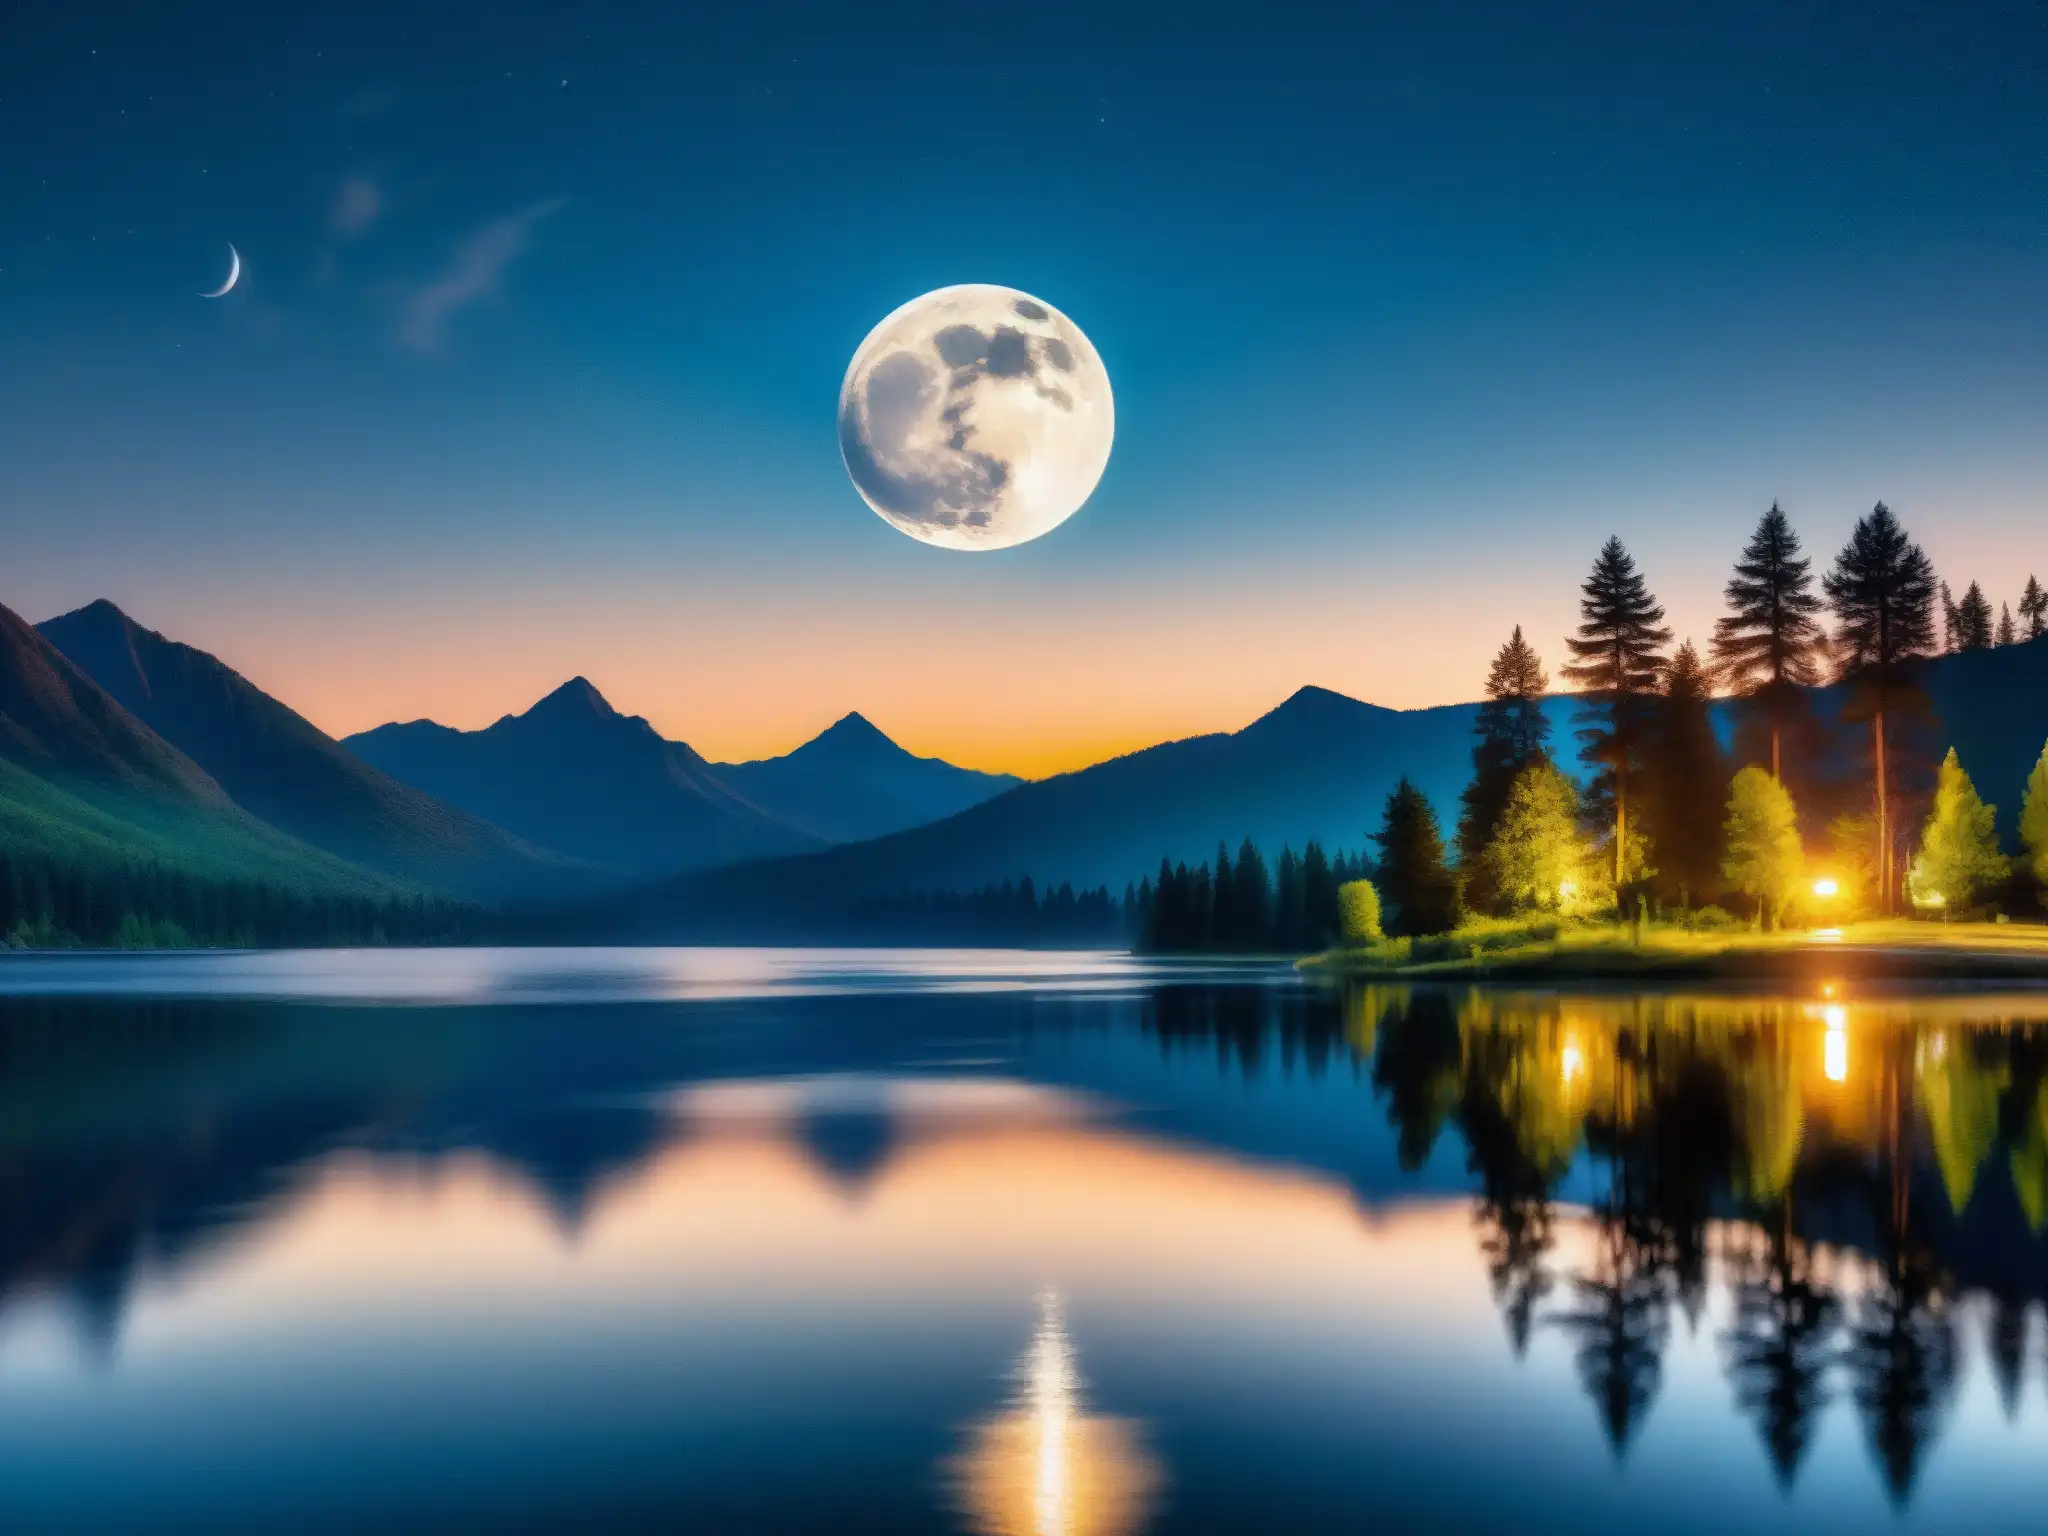 Una impresionante imagen de la luna llena brillando sobre un lago sereno, con reflejos en el agua